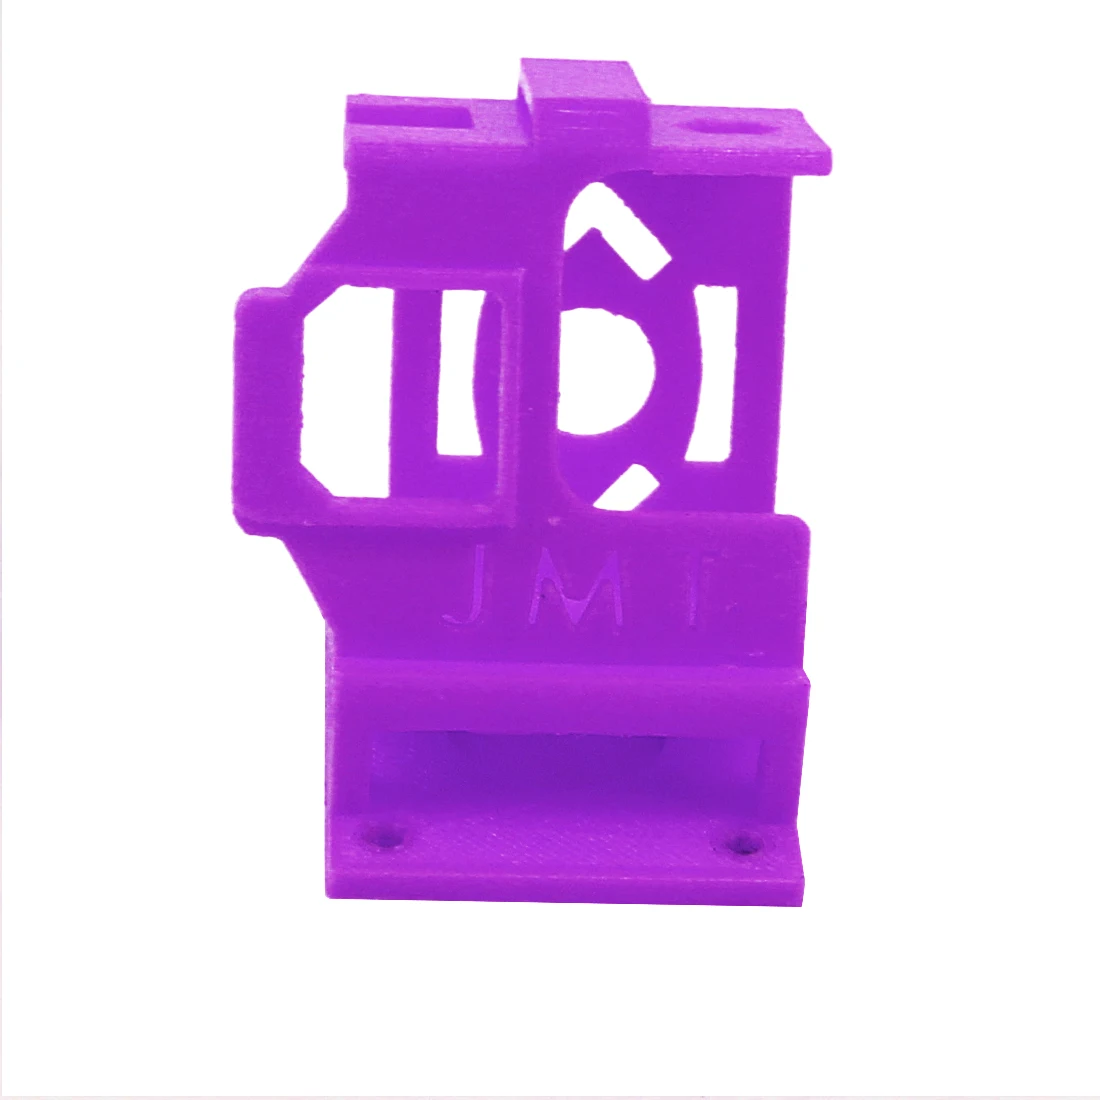 3D Печатный 30 ° TPU Материал Cam крепление держатель Защита сиденья рамка крепежный кронштейн для Gopro Hero 7 6 5 для DIY FPV гоночный Дрон